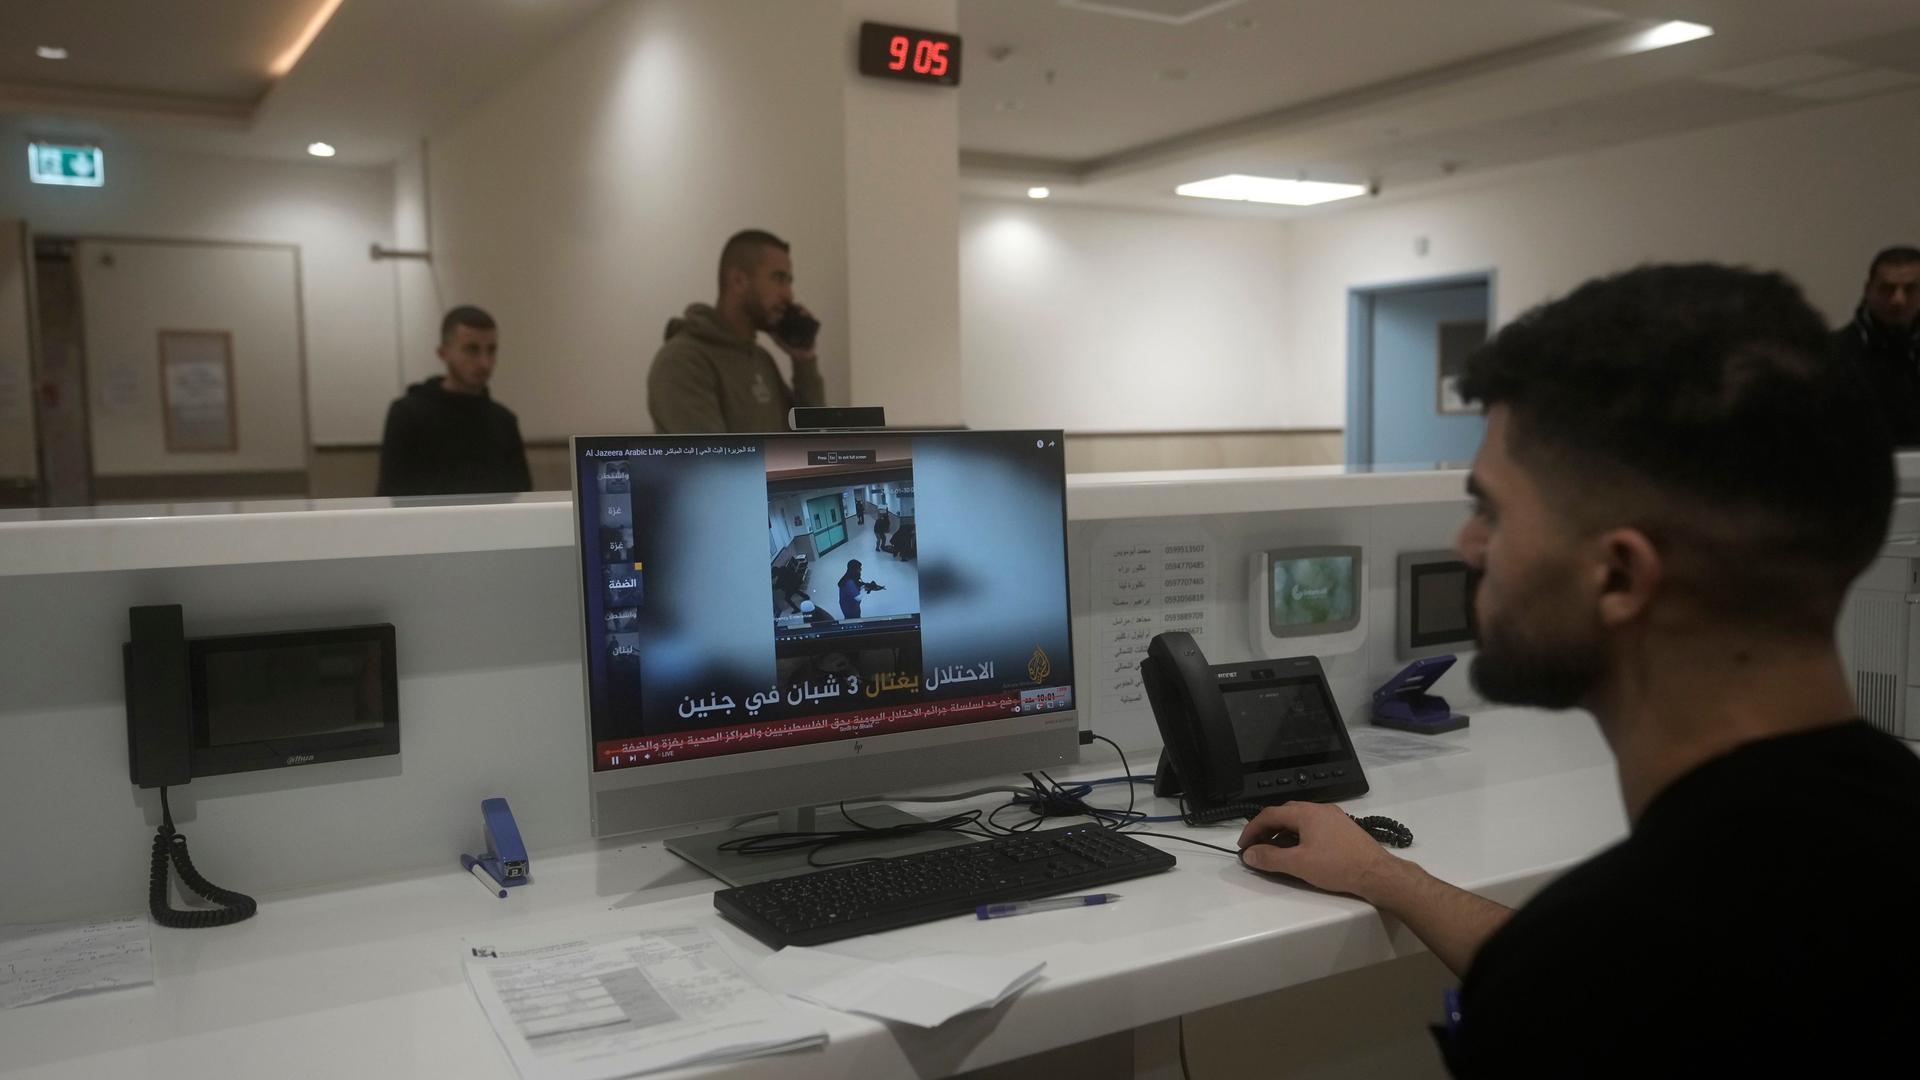 Palästinensische Gebiete, Dschenin: Ein Mitarbeiter des Ibn-Sina-Krankenhauses zeigt in einer Nachrichtensendung die Aufnahmen einer Sicherheitskamera, die einen israelischen Militärangriff zeigen.